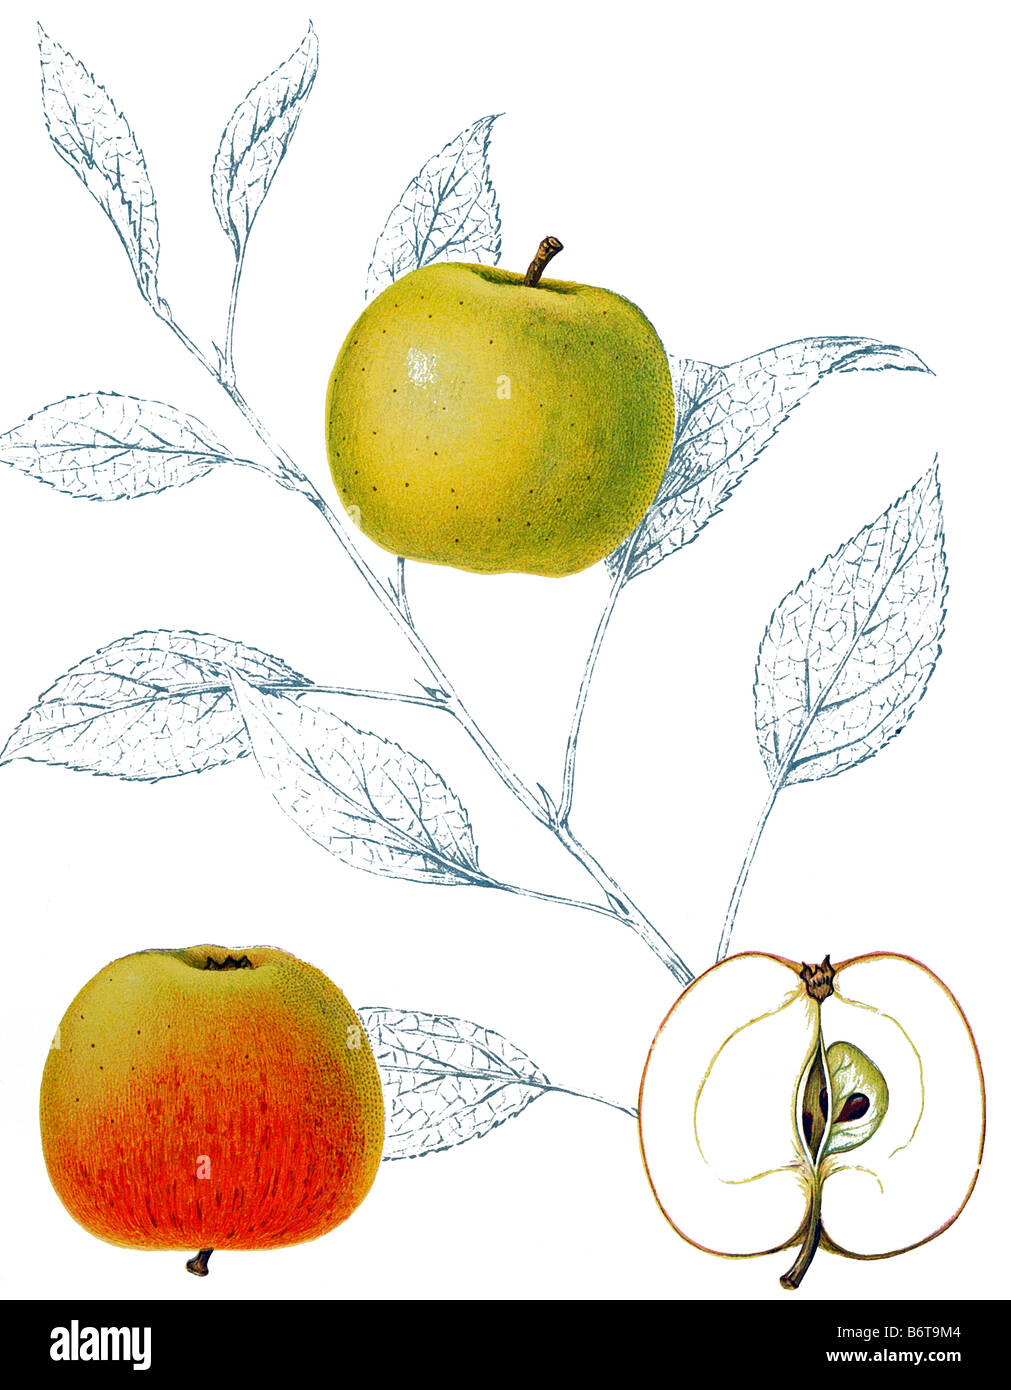 Illustration of the apple 'kesätersäpple' Stock Photo